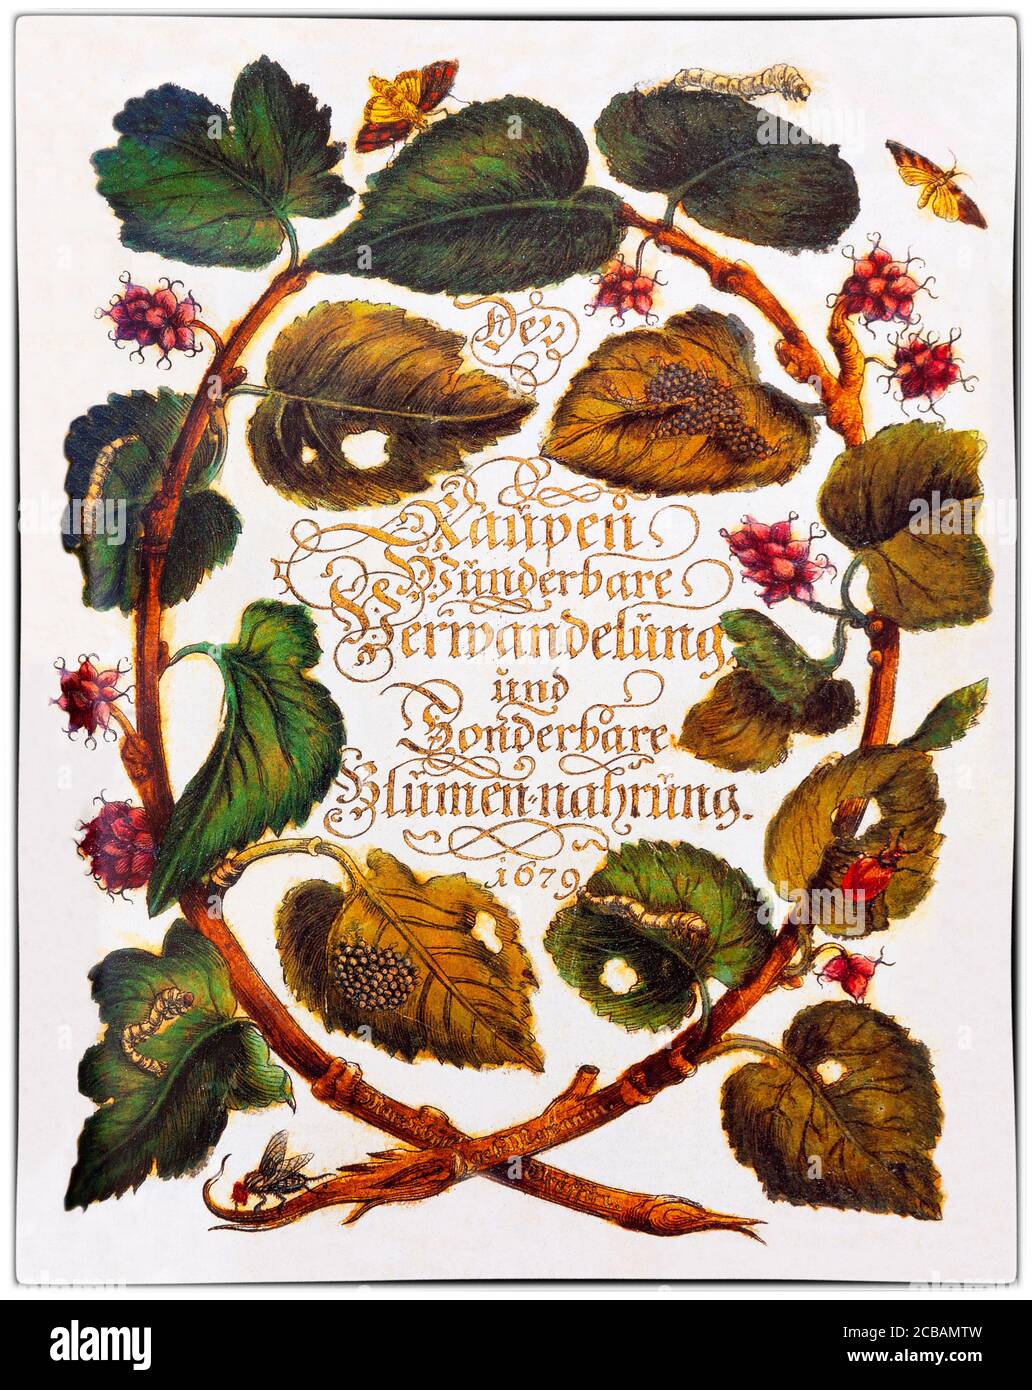 Maria Sibylla Merian (1647-1717) è stata una . Merian fu uno dei primi naturalisti europei ad osservare direttamente gli insetti. L'illustrazione mostra la pagina del titolo della prima grande opera dell'artista, 'der Raupen wunderbare Verwandelung und sonderbare Blumennahrung' (Trans: La meravigliosa trasformazione dei caterpillars e lo strano cibo dei fiori) Foto Stock